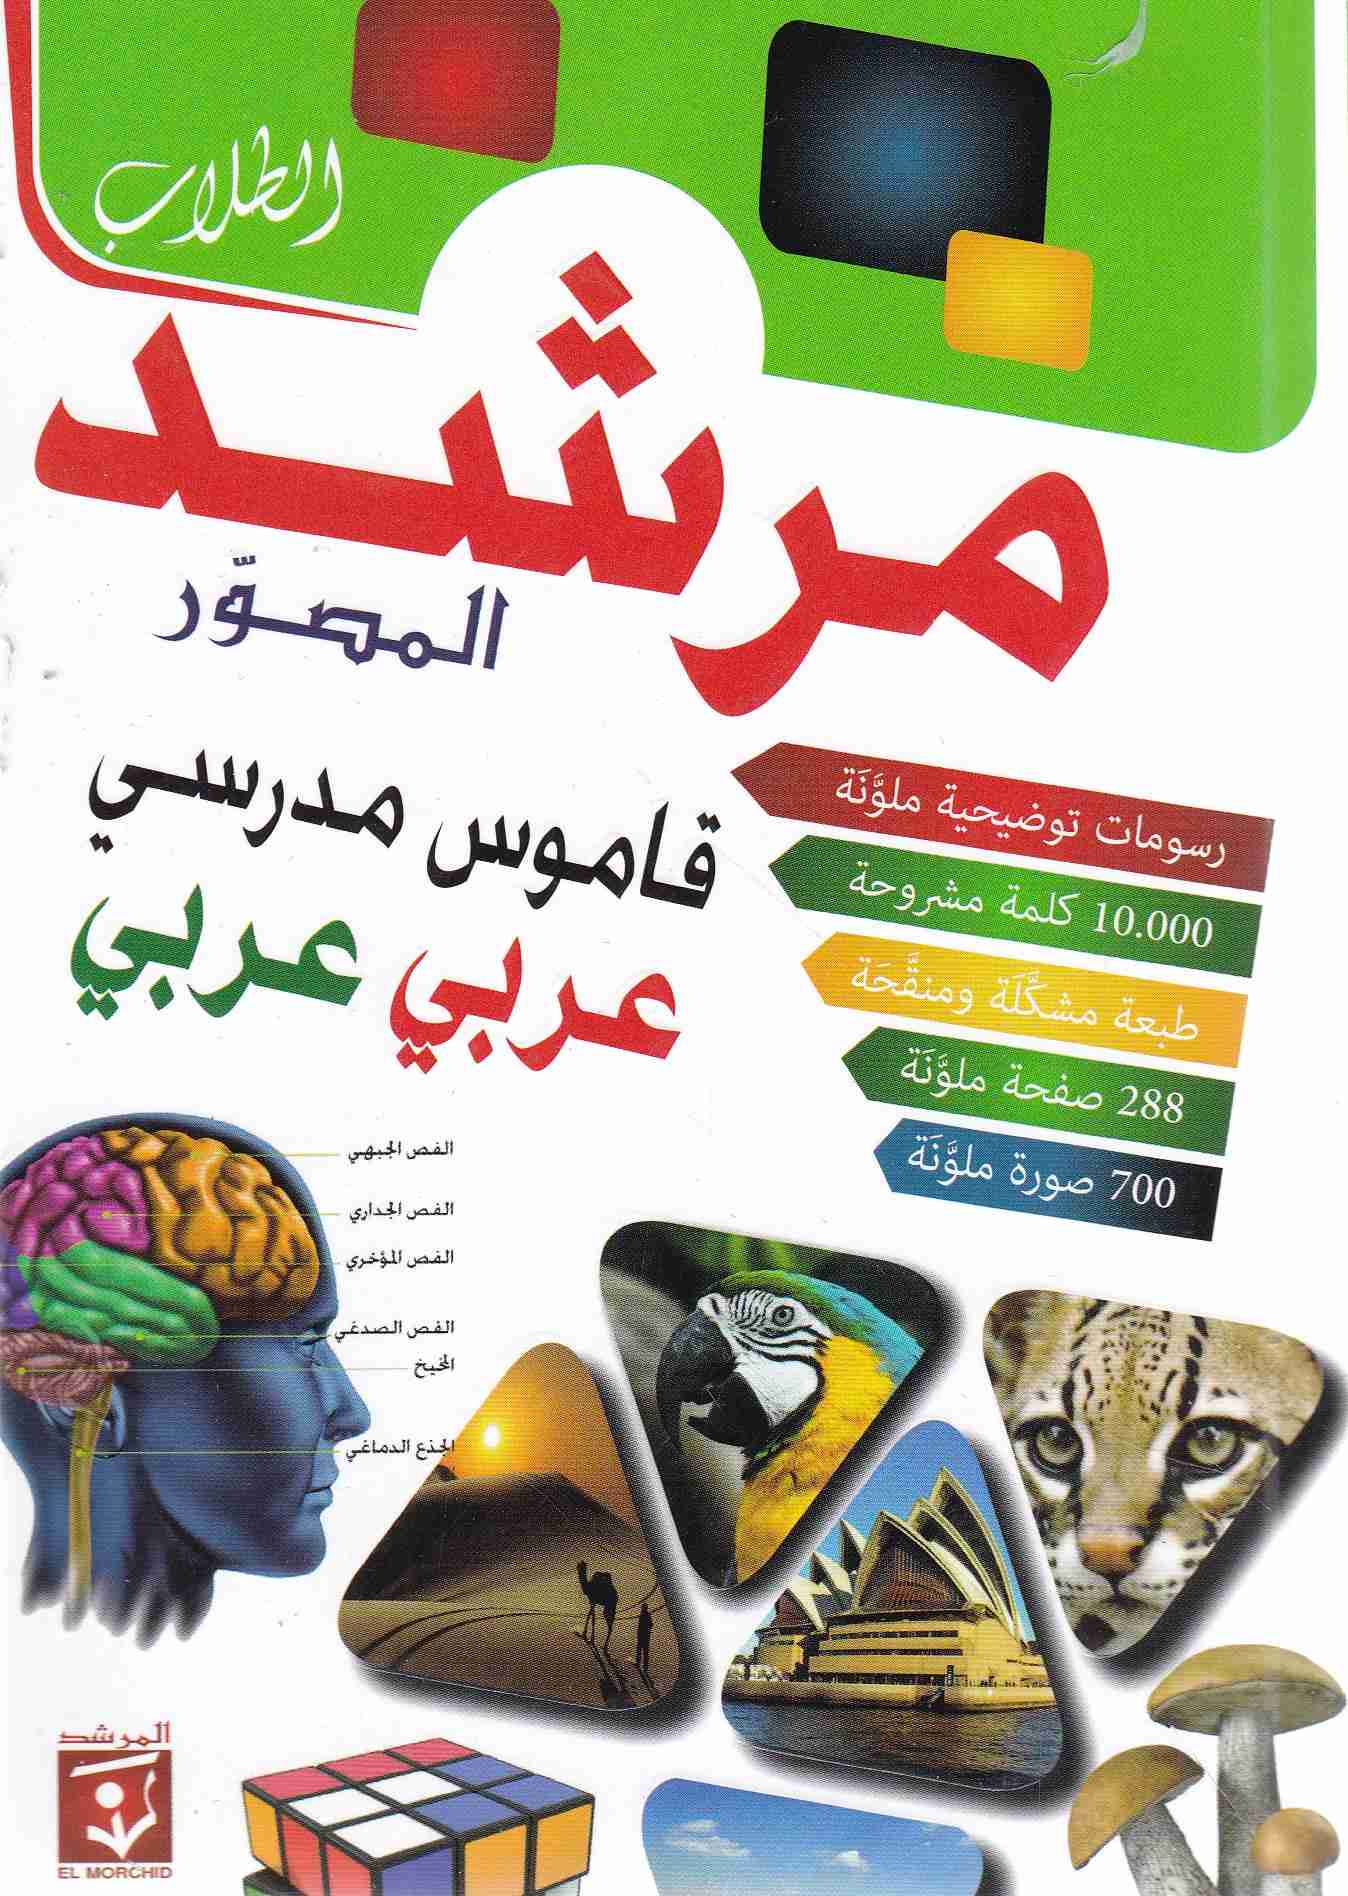 مرشد الطلاب المصور قاموس مدرسي عربي-عربي